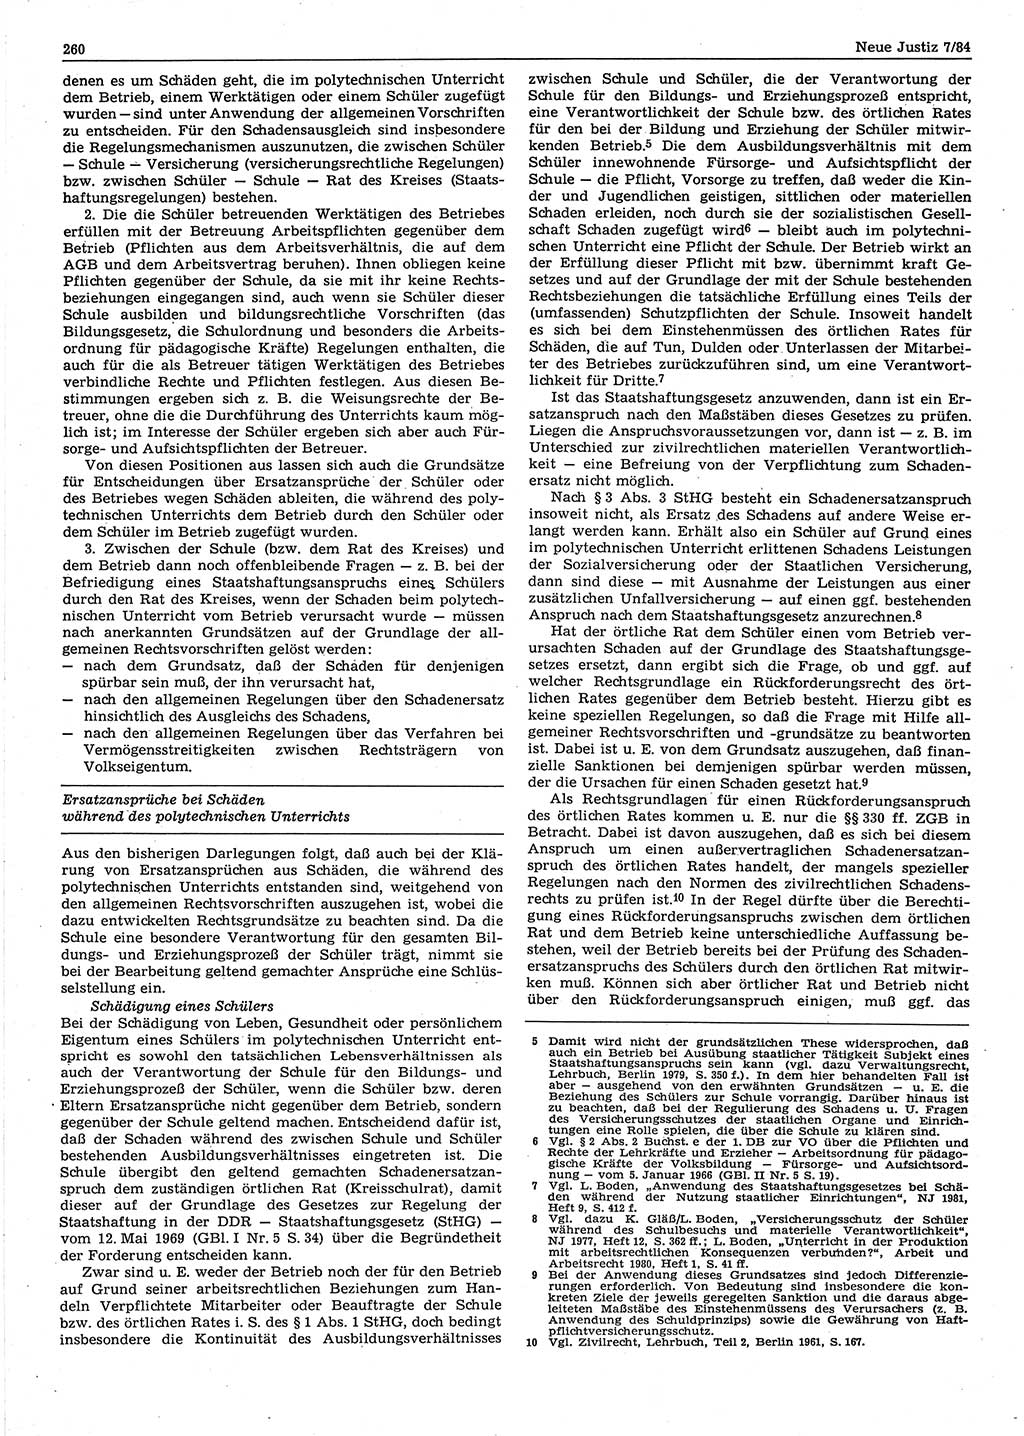 Neue Justiz (NJ), Zeitschrift für sozialistisches Recht und Gesetzlichkeit [Deutsche Demokratische Republik (DDR)], 38. Jahrgang 1984, Seite 260 (NJ DDR 1984, S. 260)